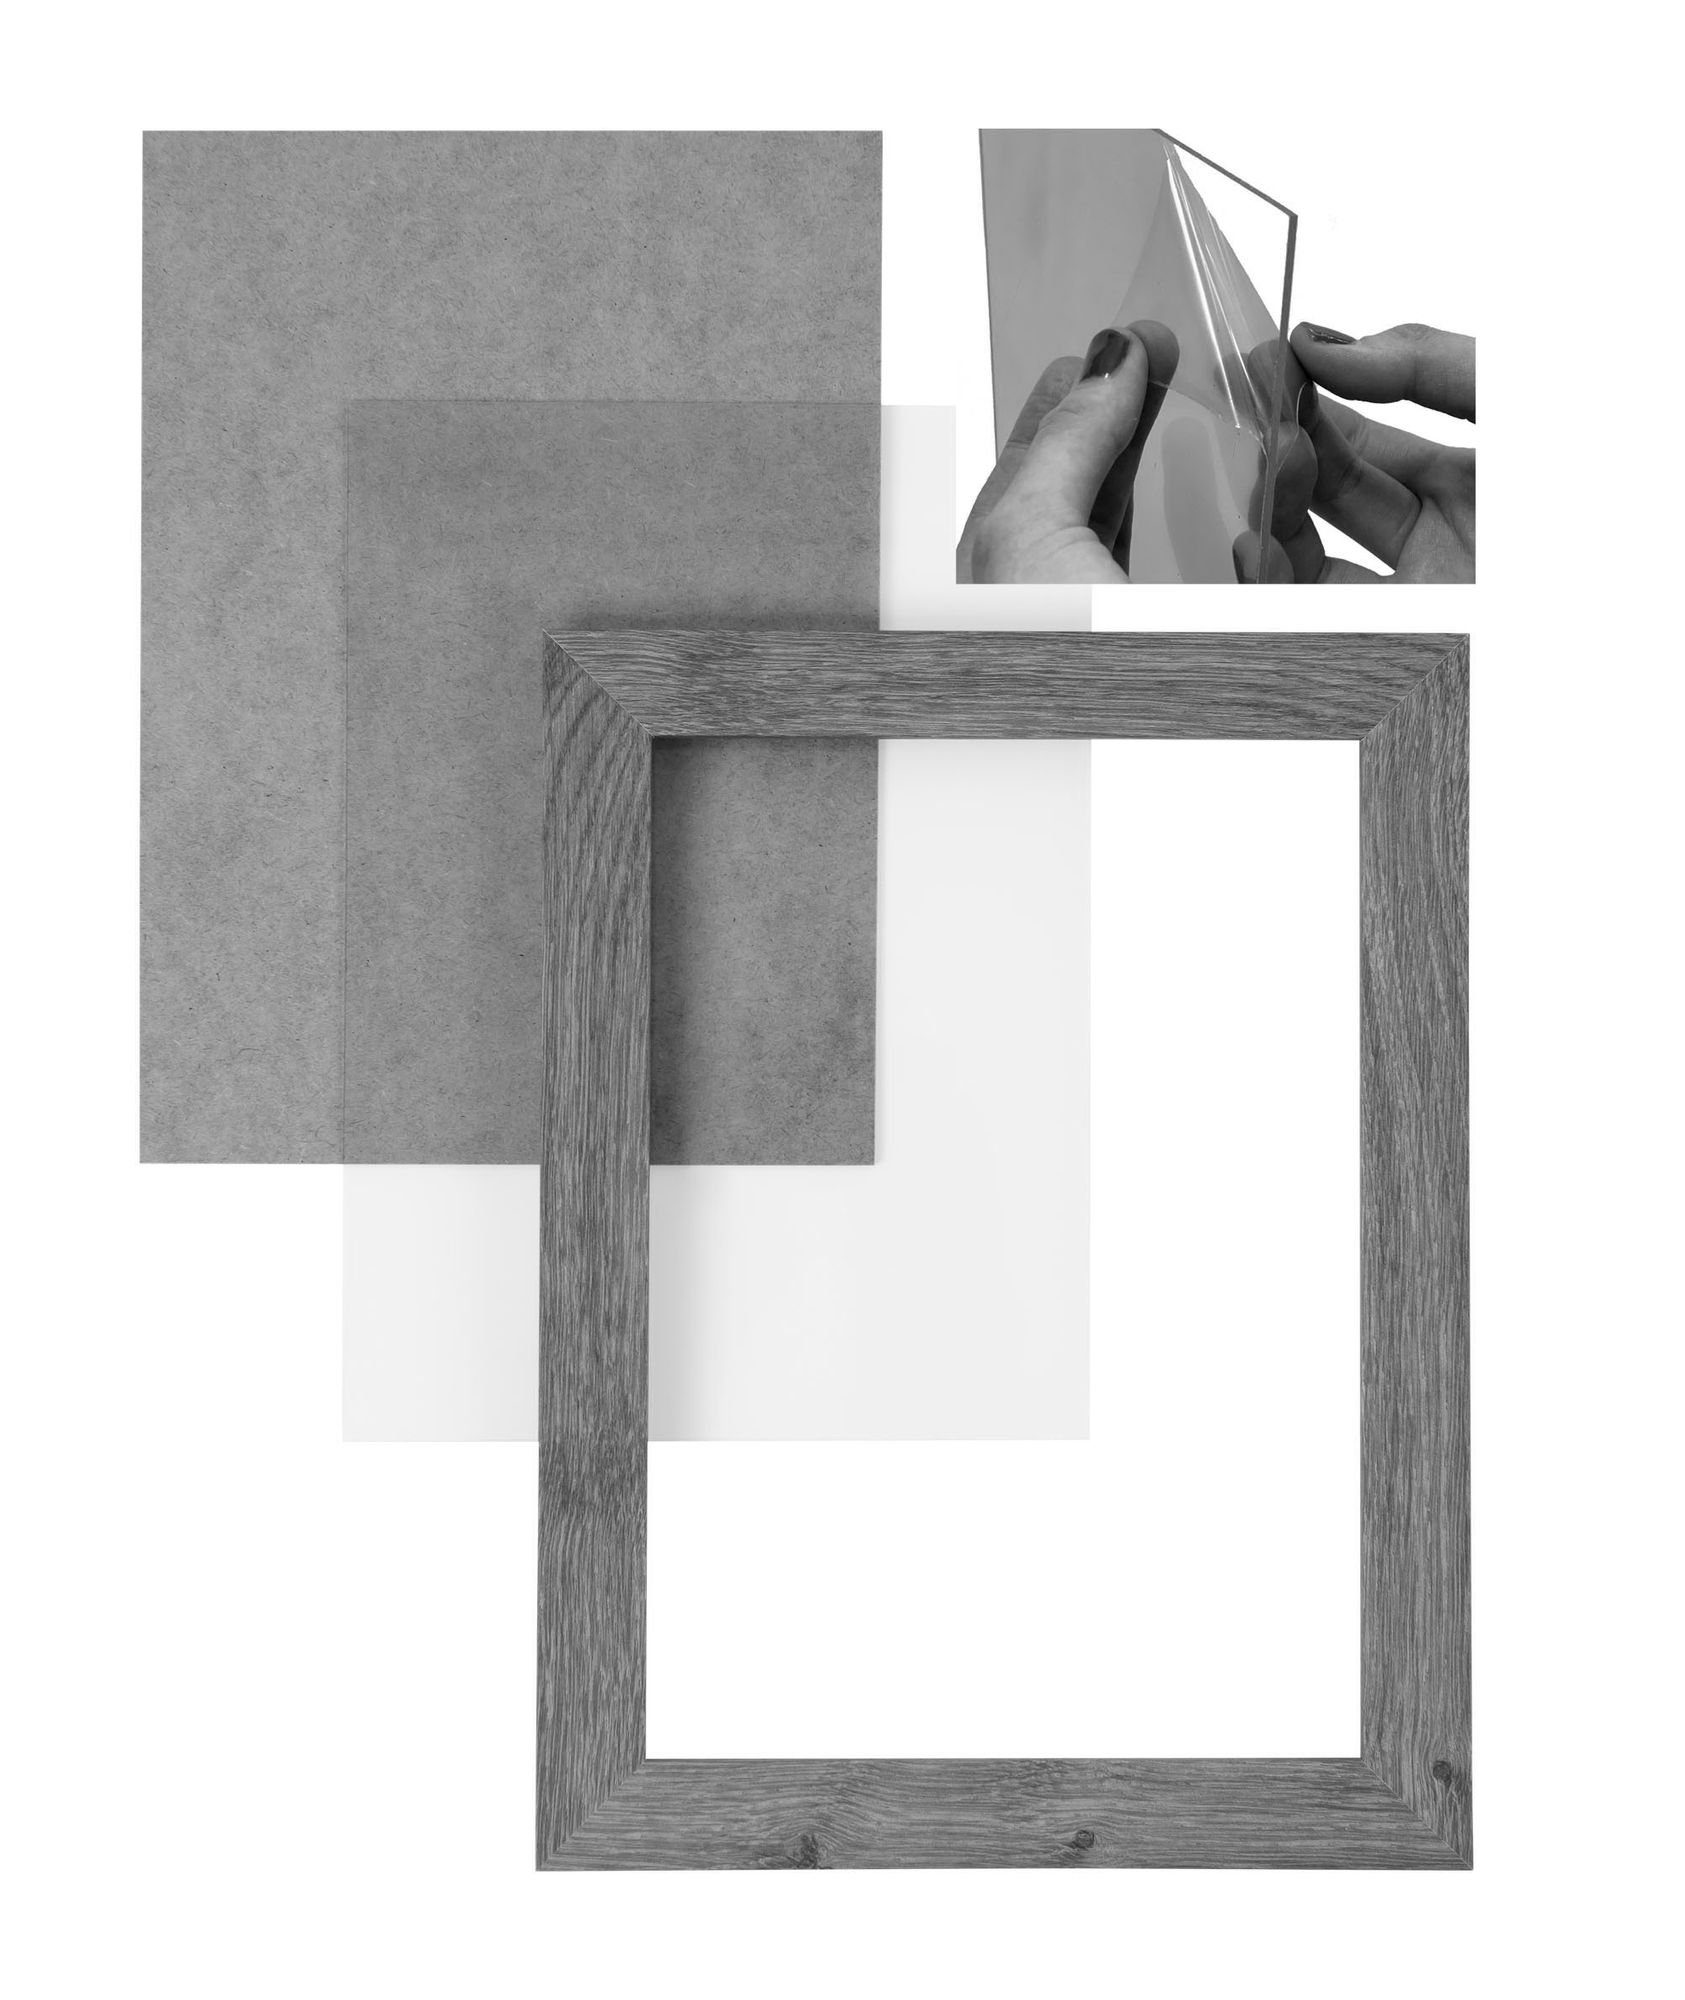 'Collage' Rückwand Bilderrahmen Weiss Matt Quadratisch FSC® und MDF inkl. Holz Clamaro Acrylglas, Aufhänger Rahmen